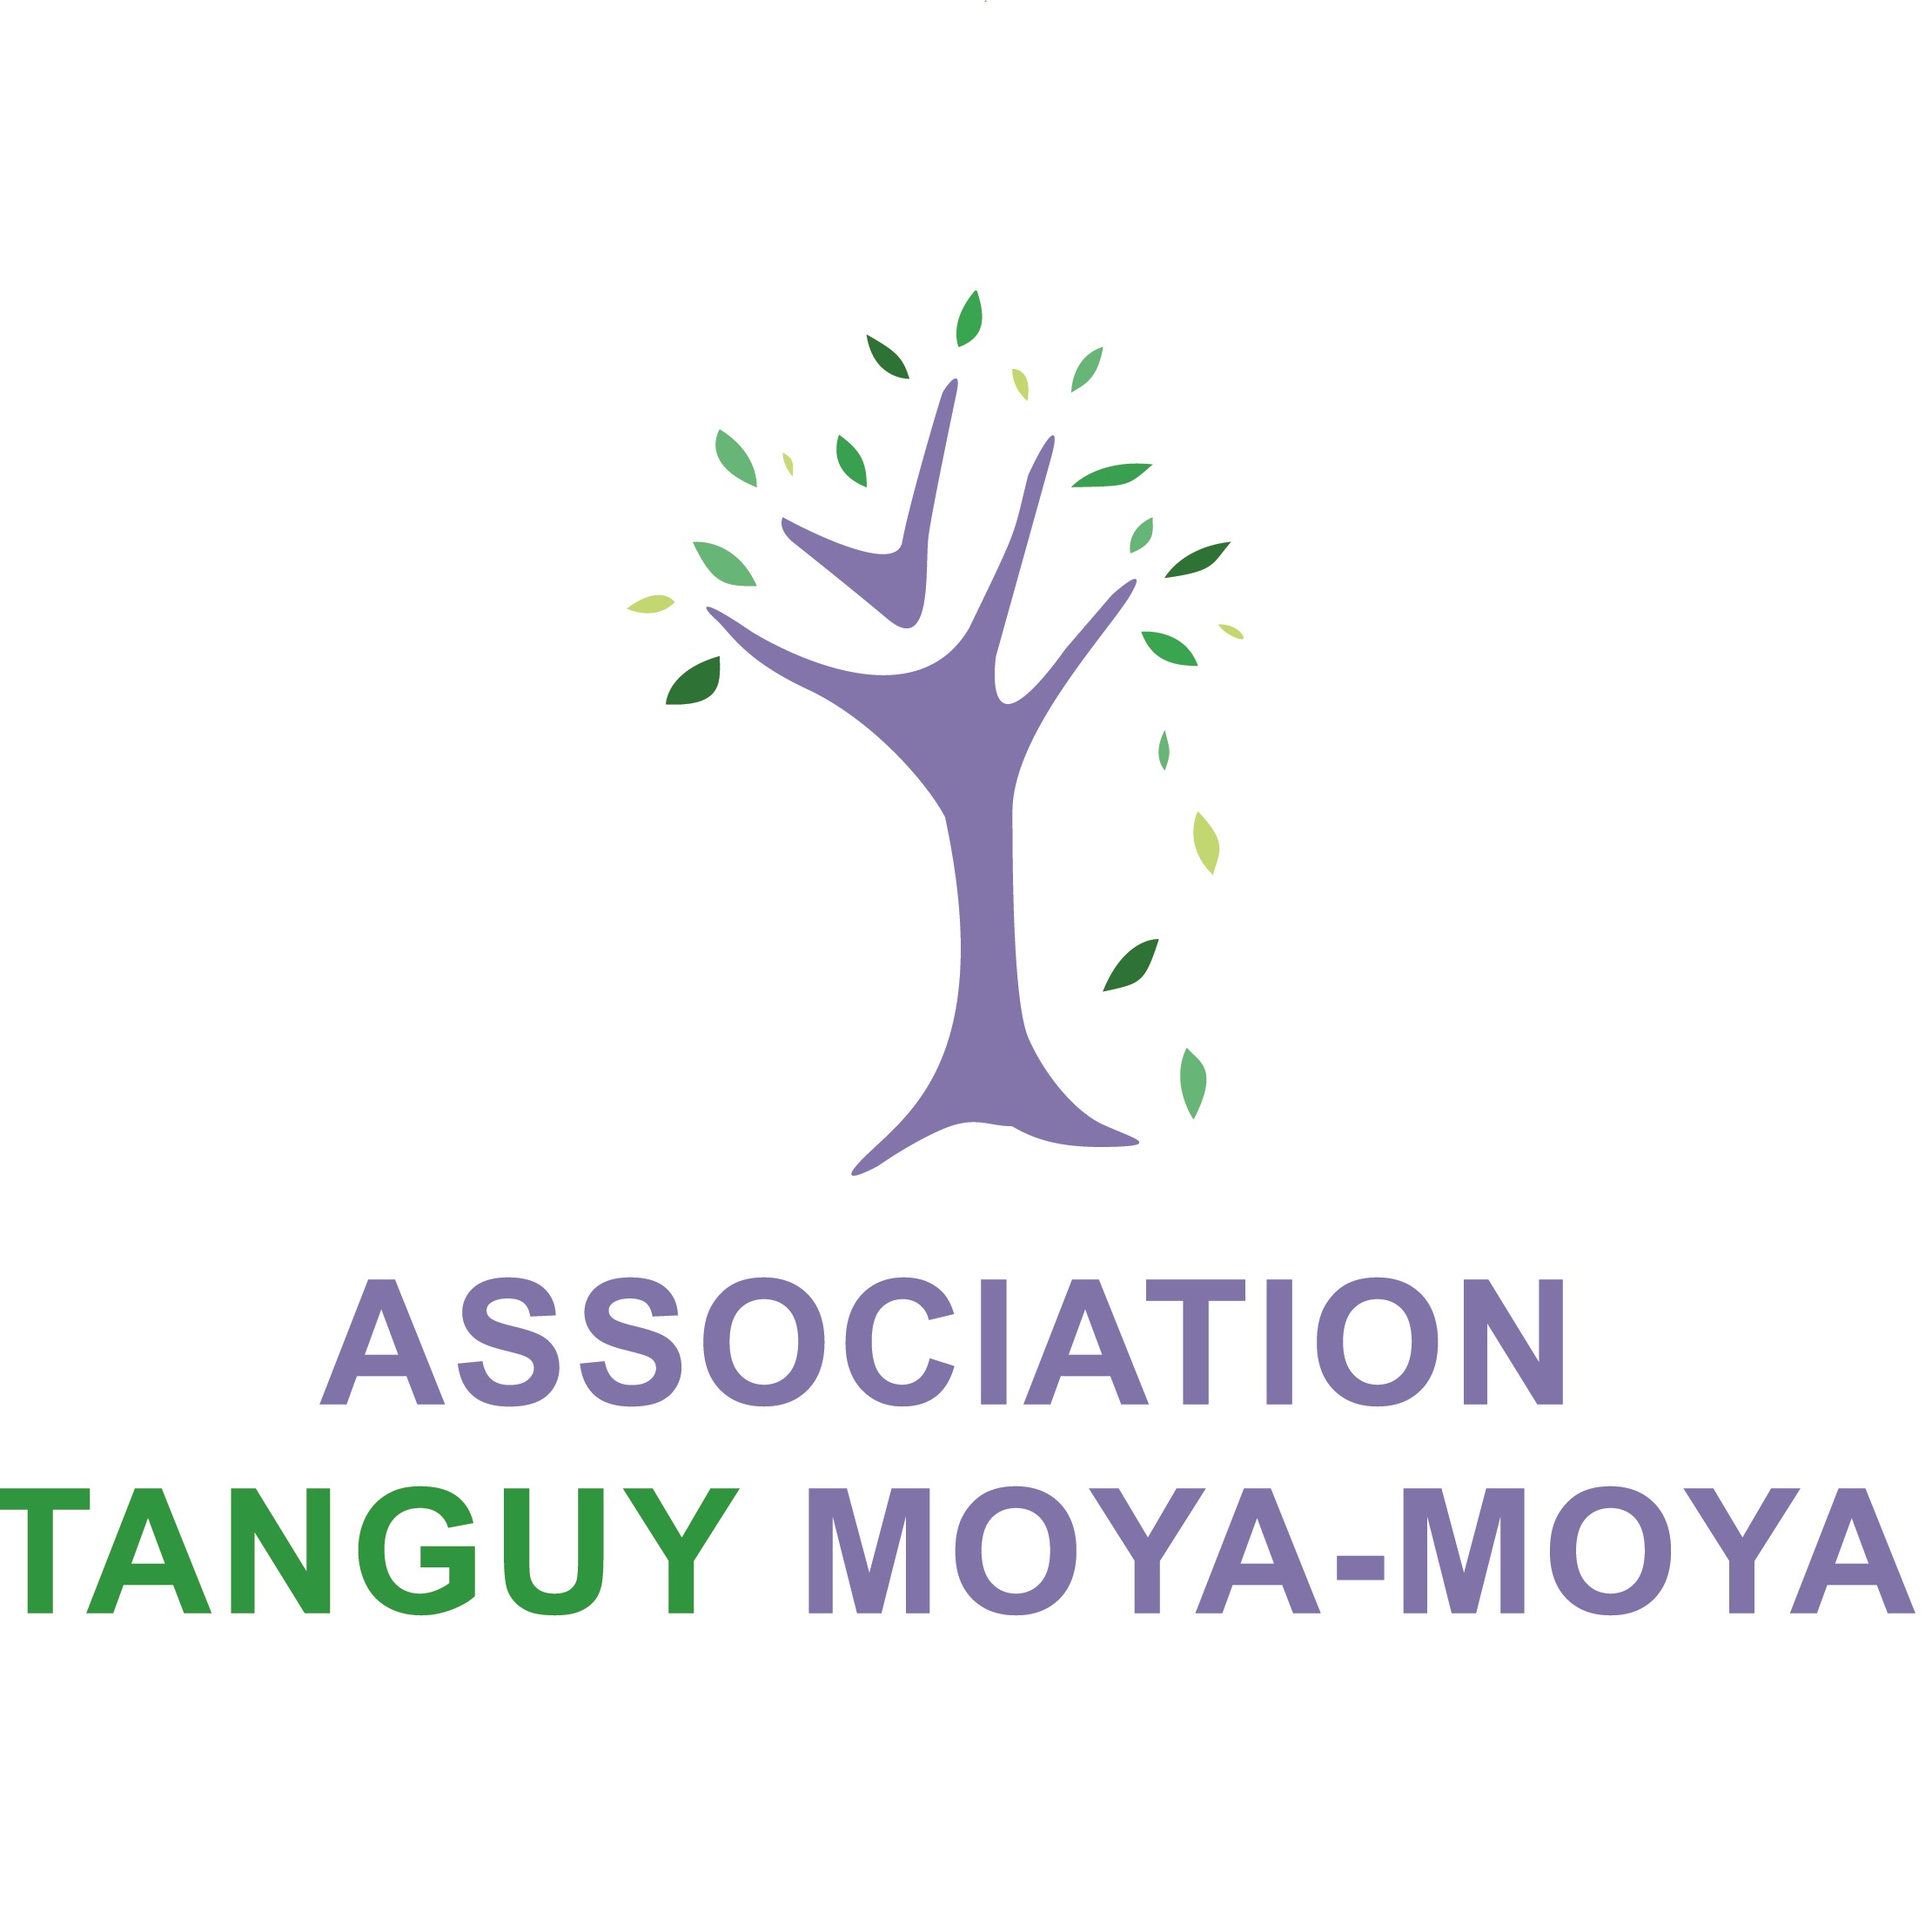 Association Tanguy Moya-Moya